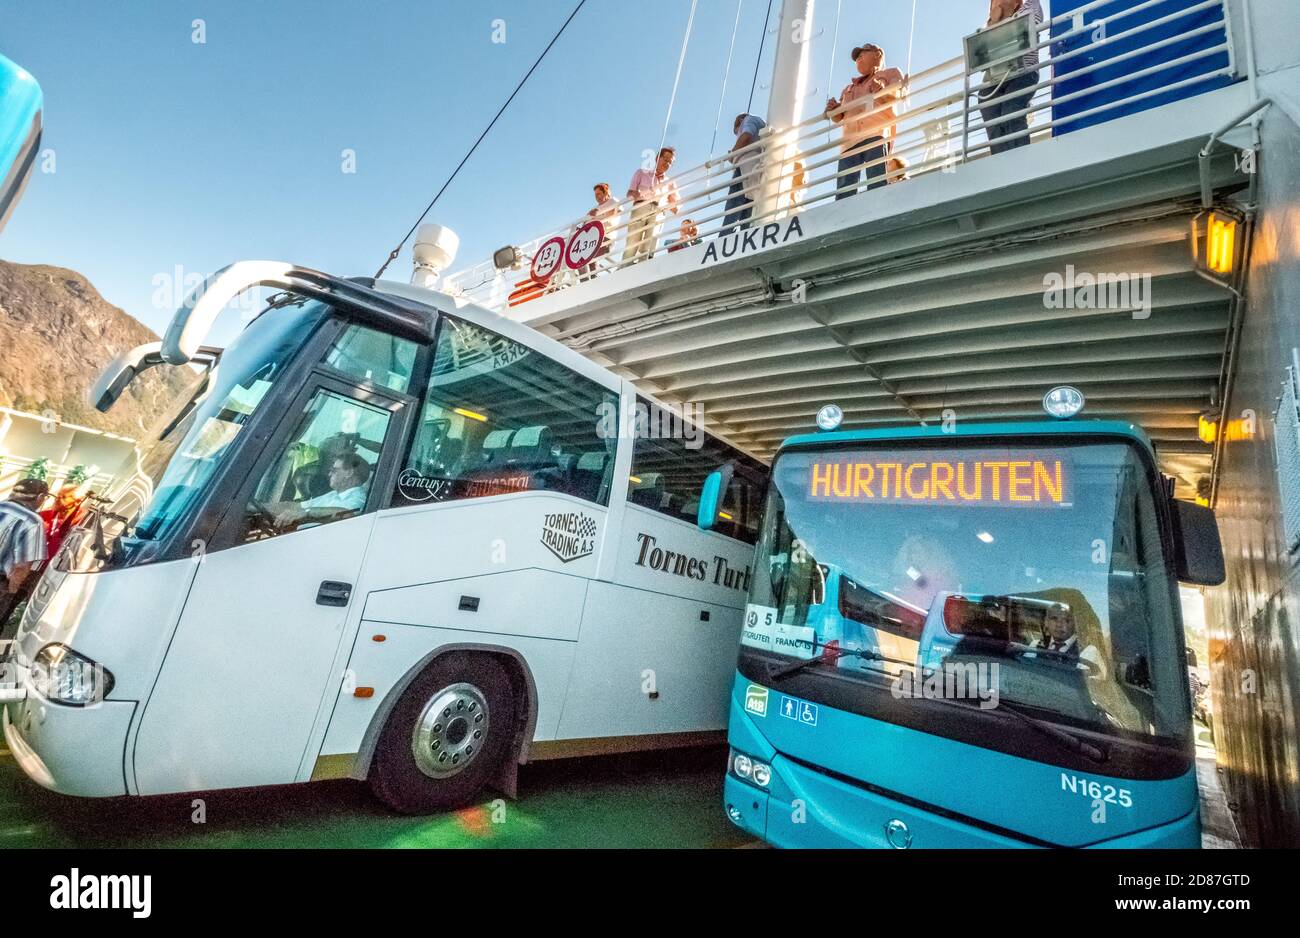 Autocars sur un ferry, , Eidsdal, Møre og Romsdal, Norvège, Scandinavie, Europe, voyage aventure, tourisme, Hurtigruten, Hurtigruten voyage, croisière, NOR, Banque D'Images